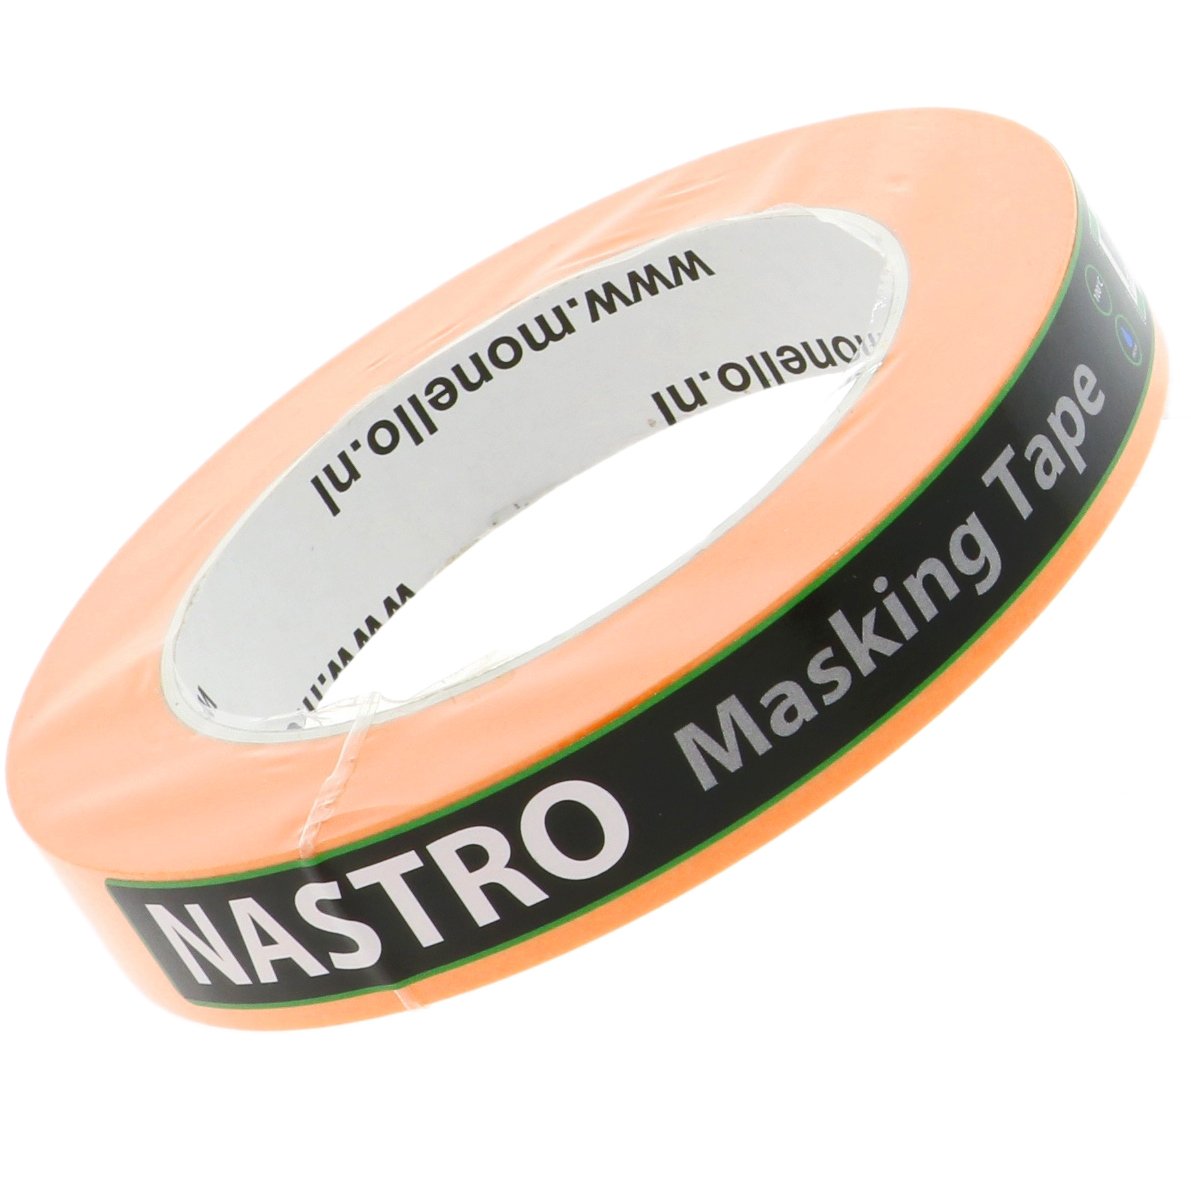 Nastro Masking Tape 19mm